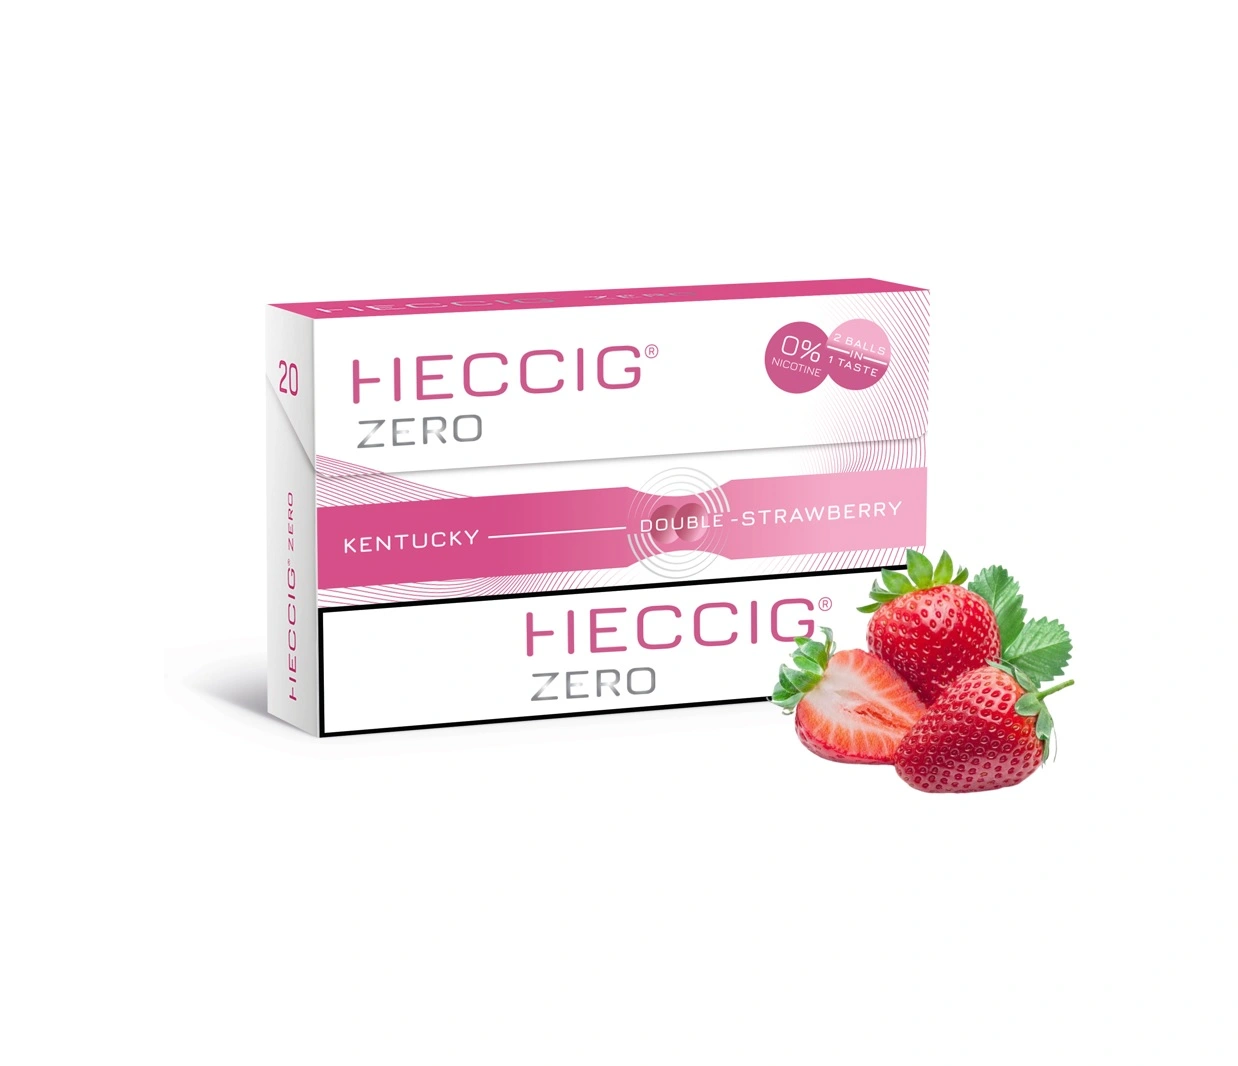 Heccig zero strawberry